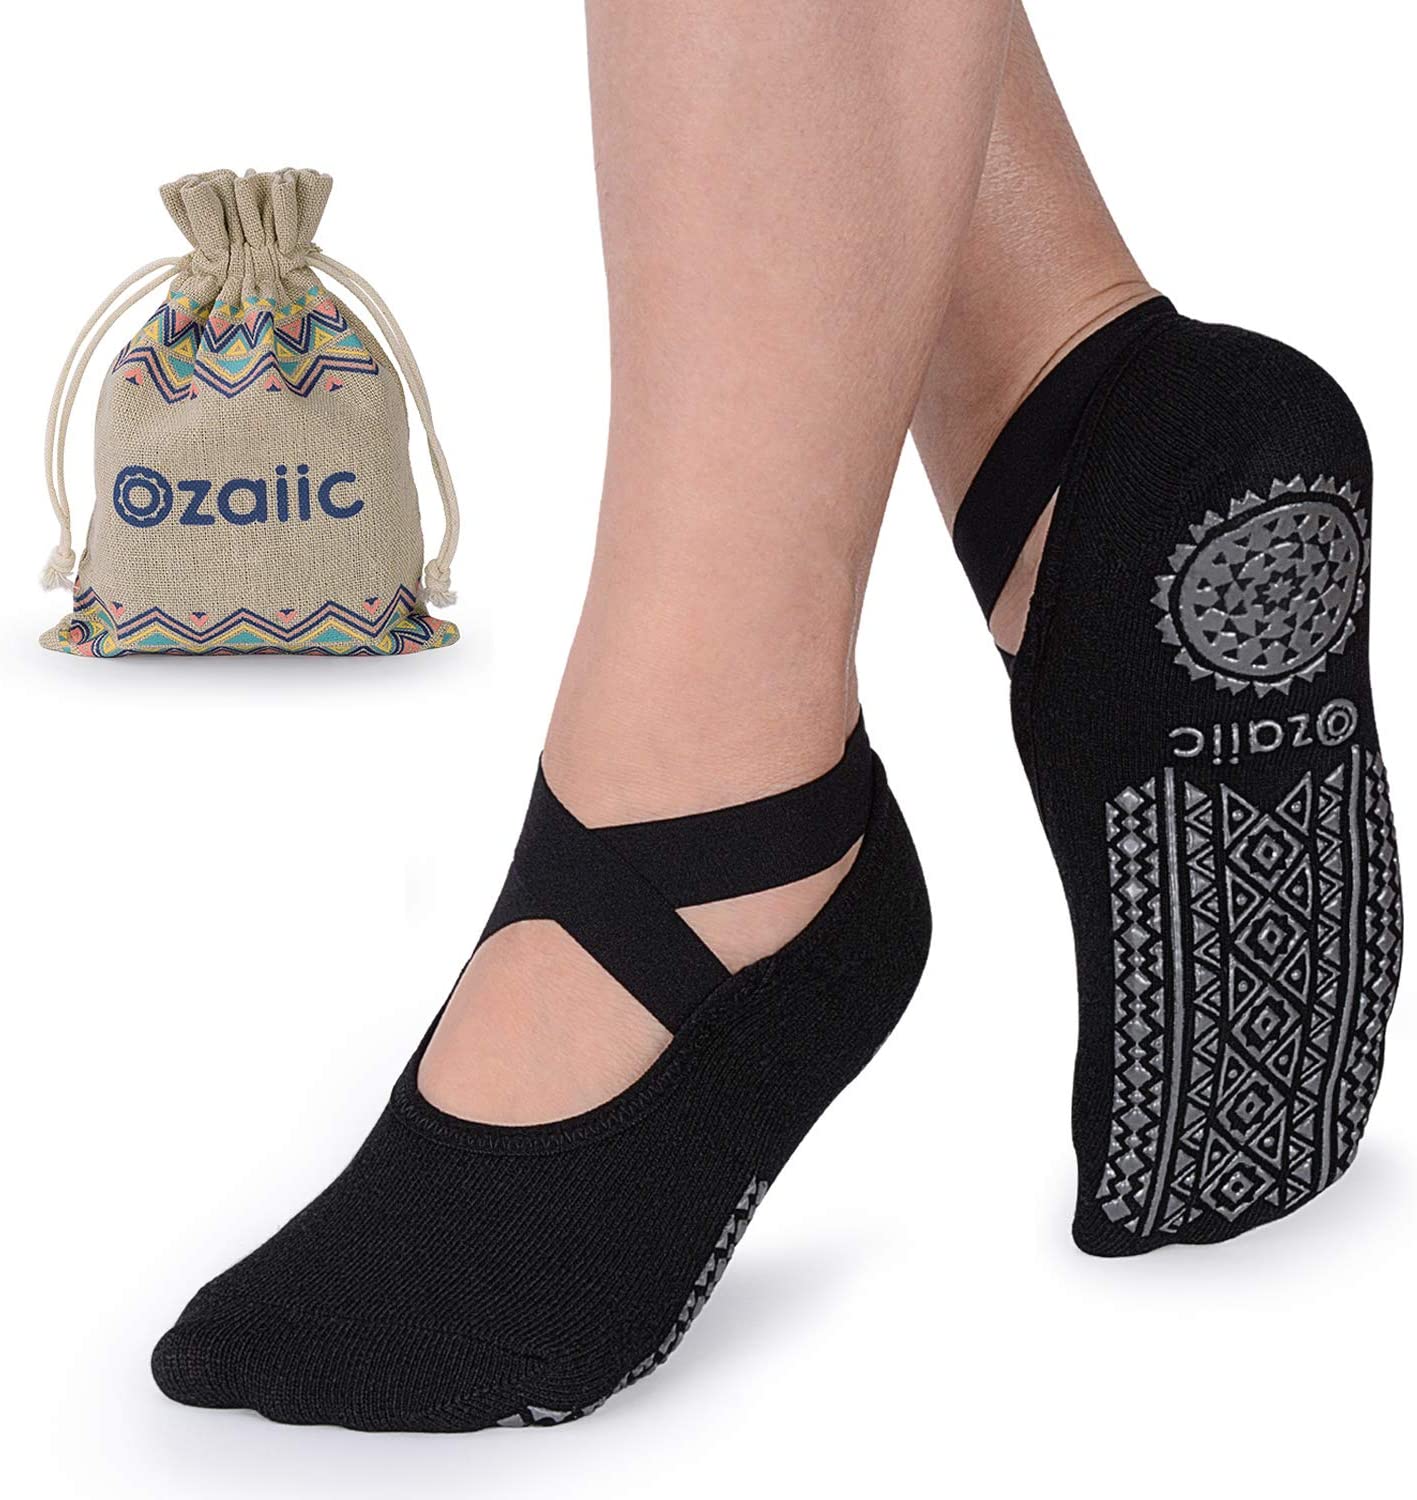 CaiDieNu Yoga Socks for Women, Non Slip Full Toe Socks with Grips